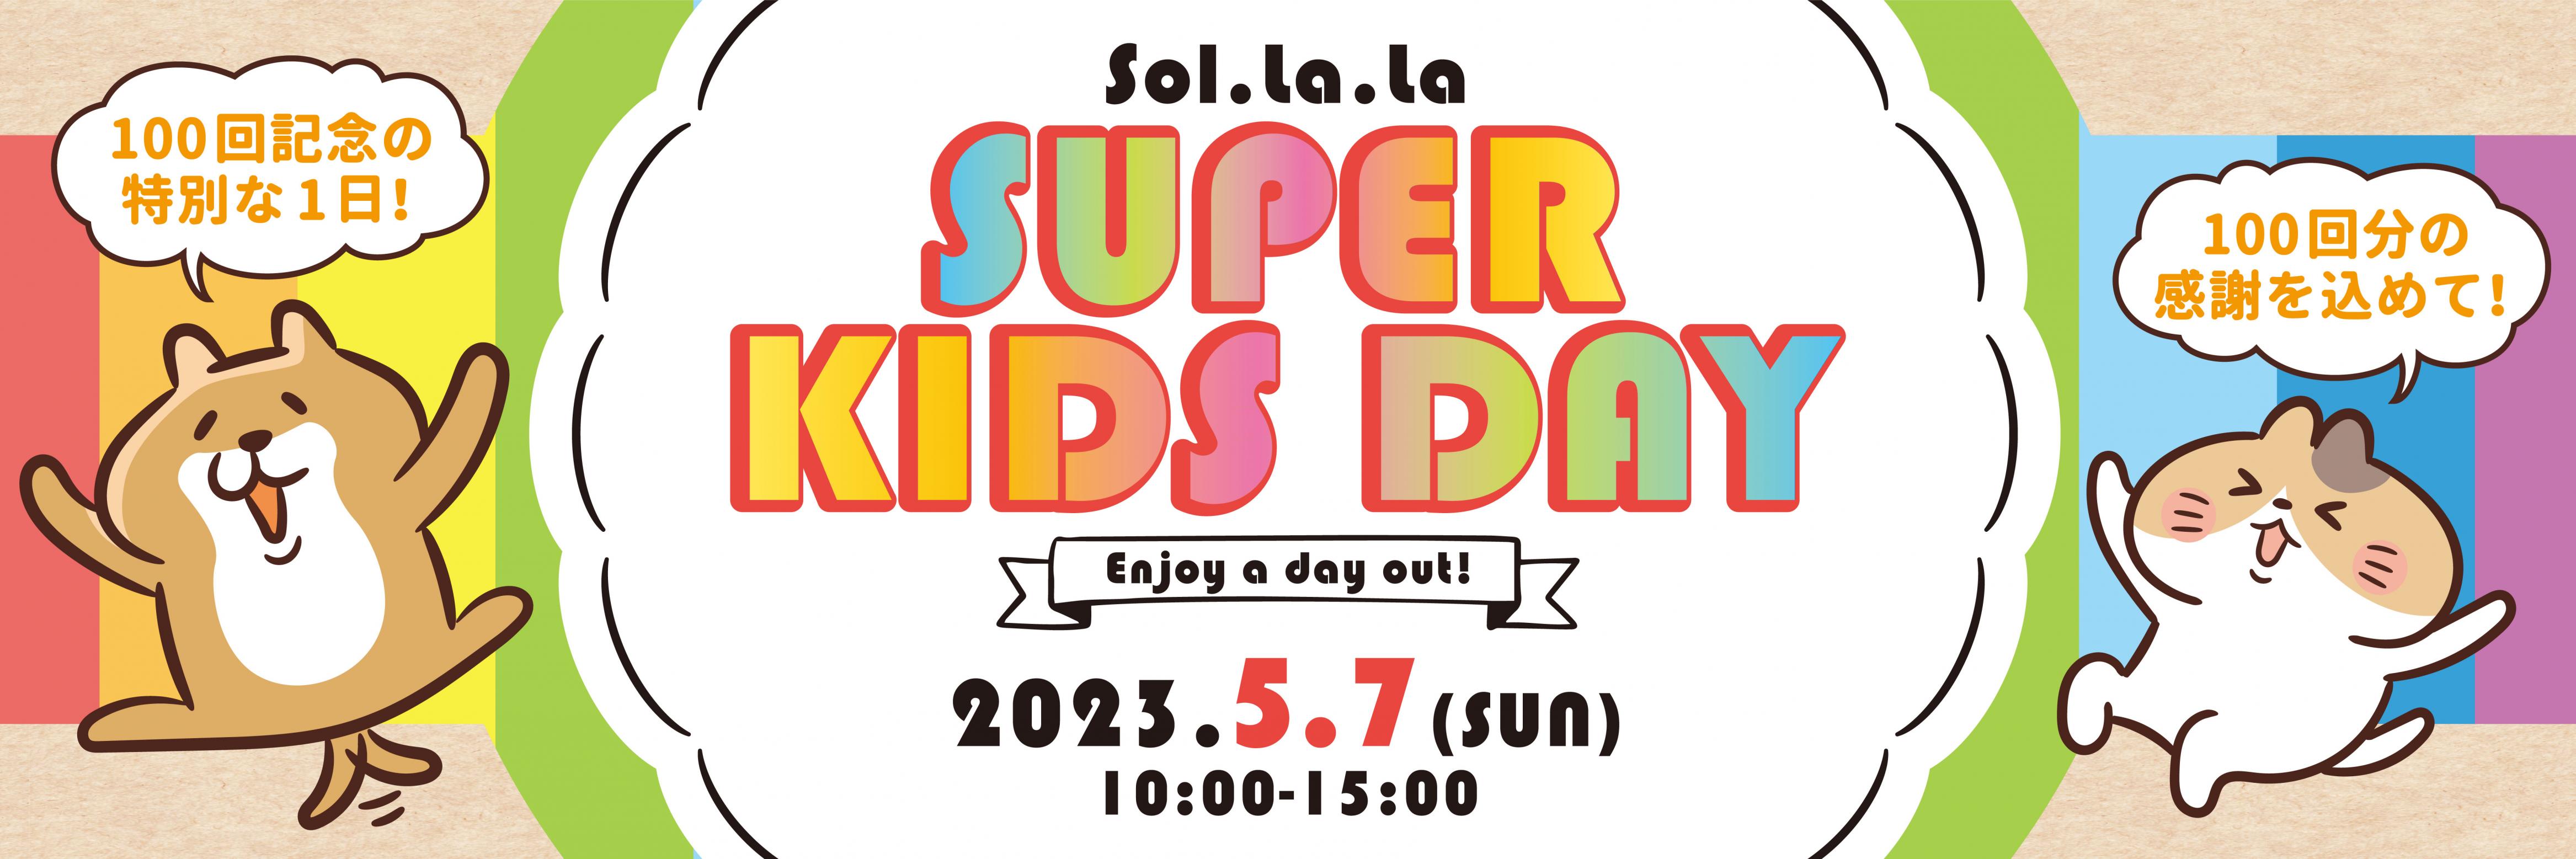 5月7日（日曜日）「Sol・la・la SUPER KIDS DAY」は荒天のため規模を縮小して開催します。